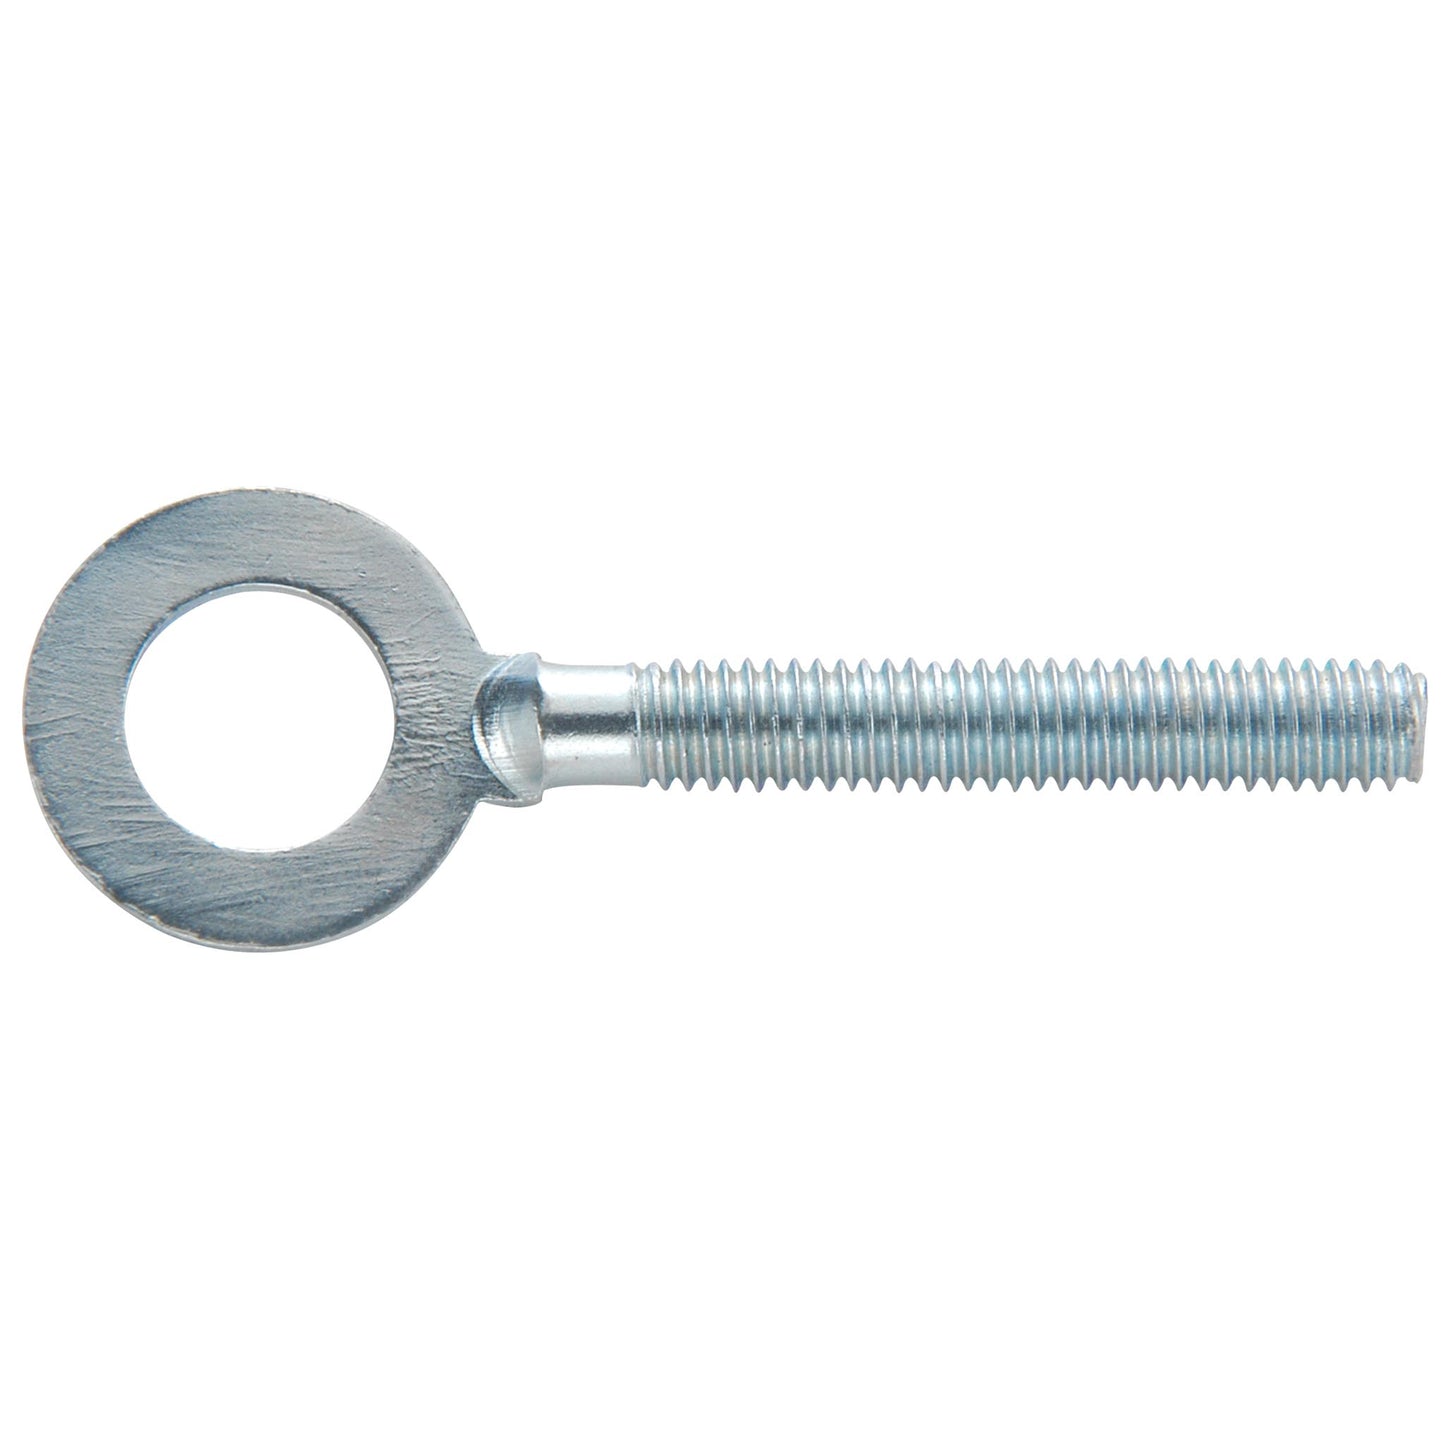 Chain tensioner stem galvanized steel